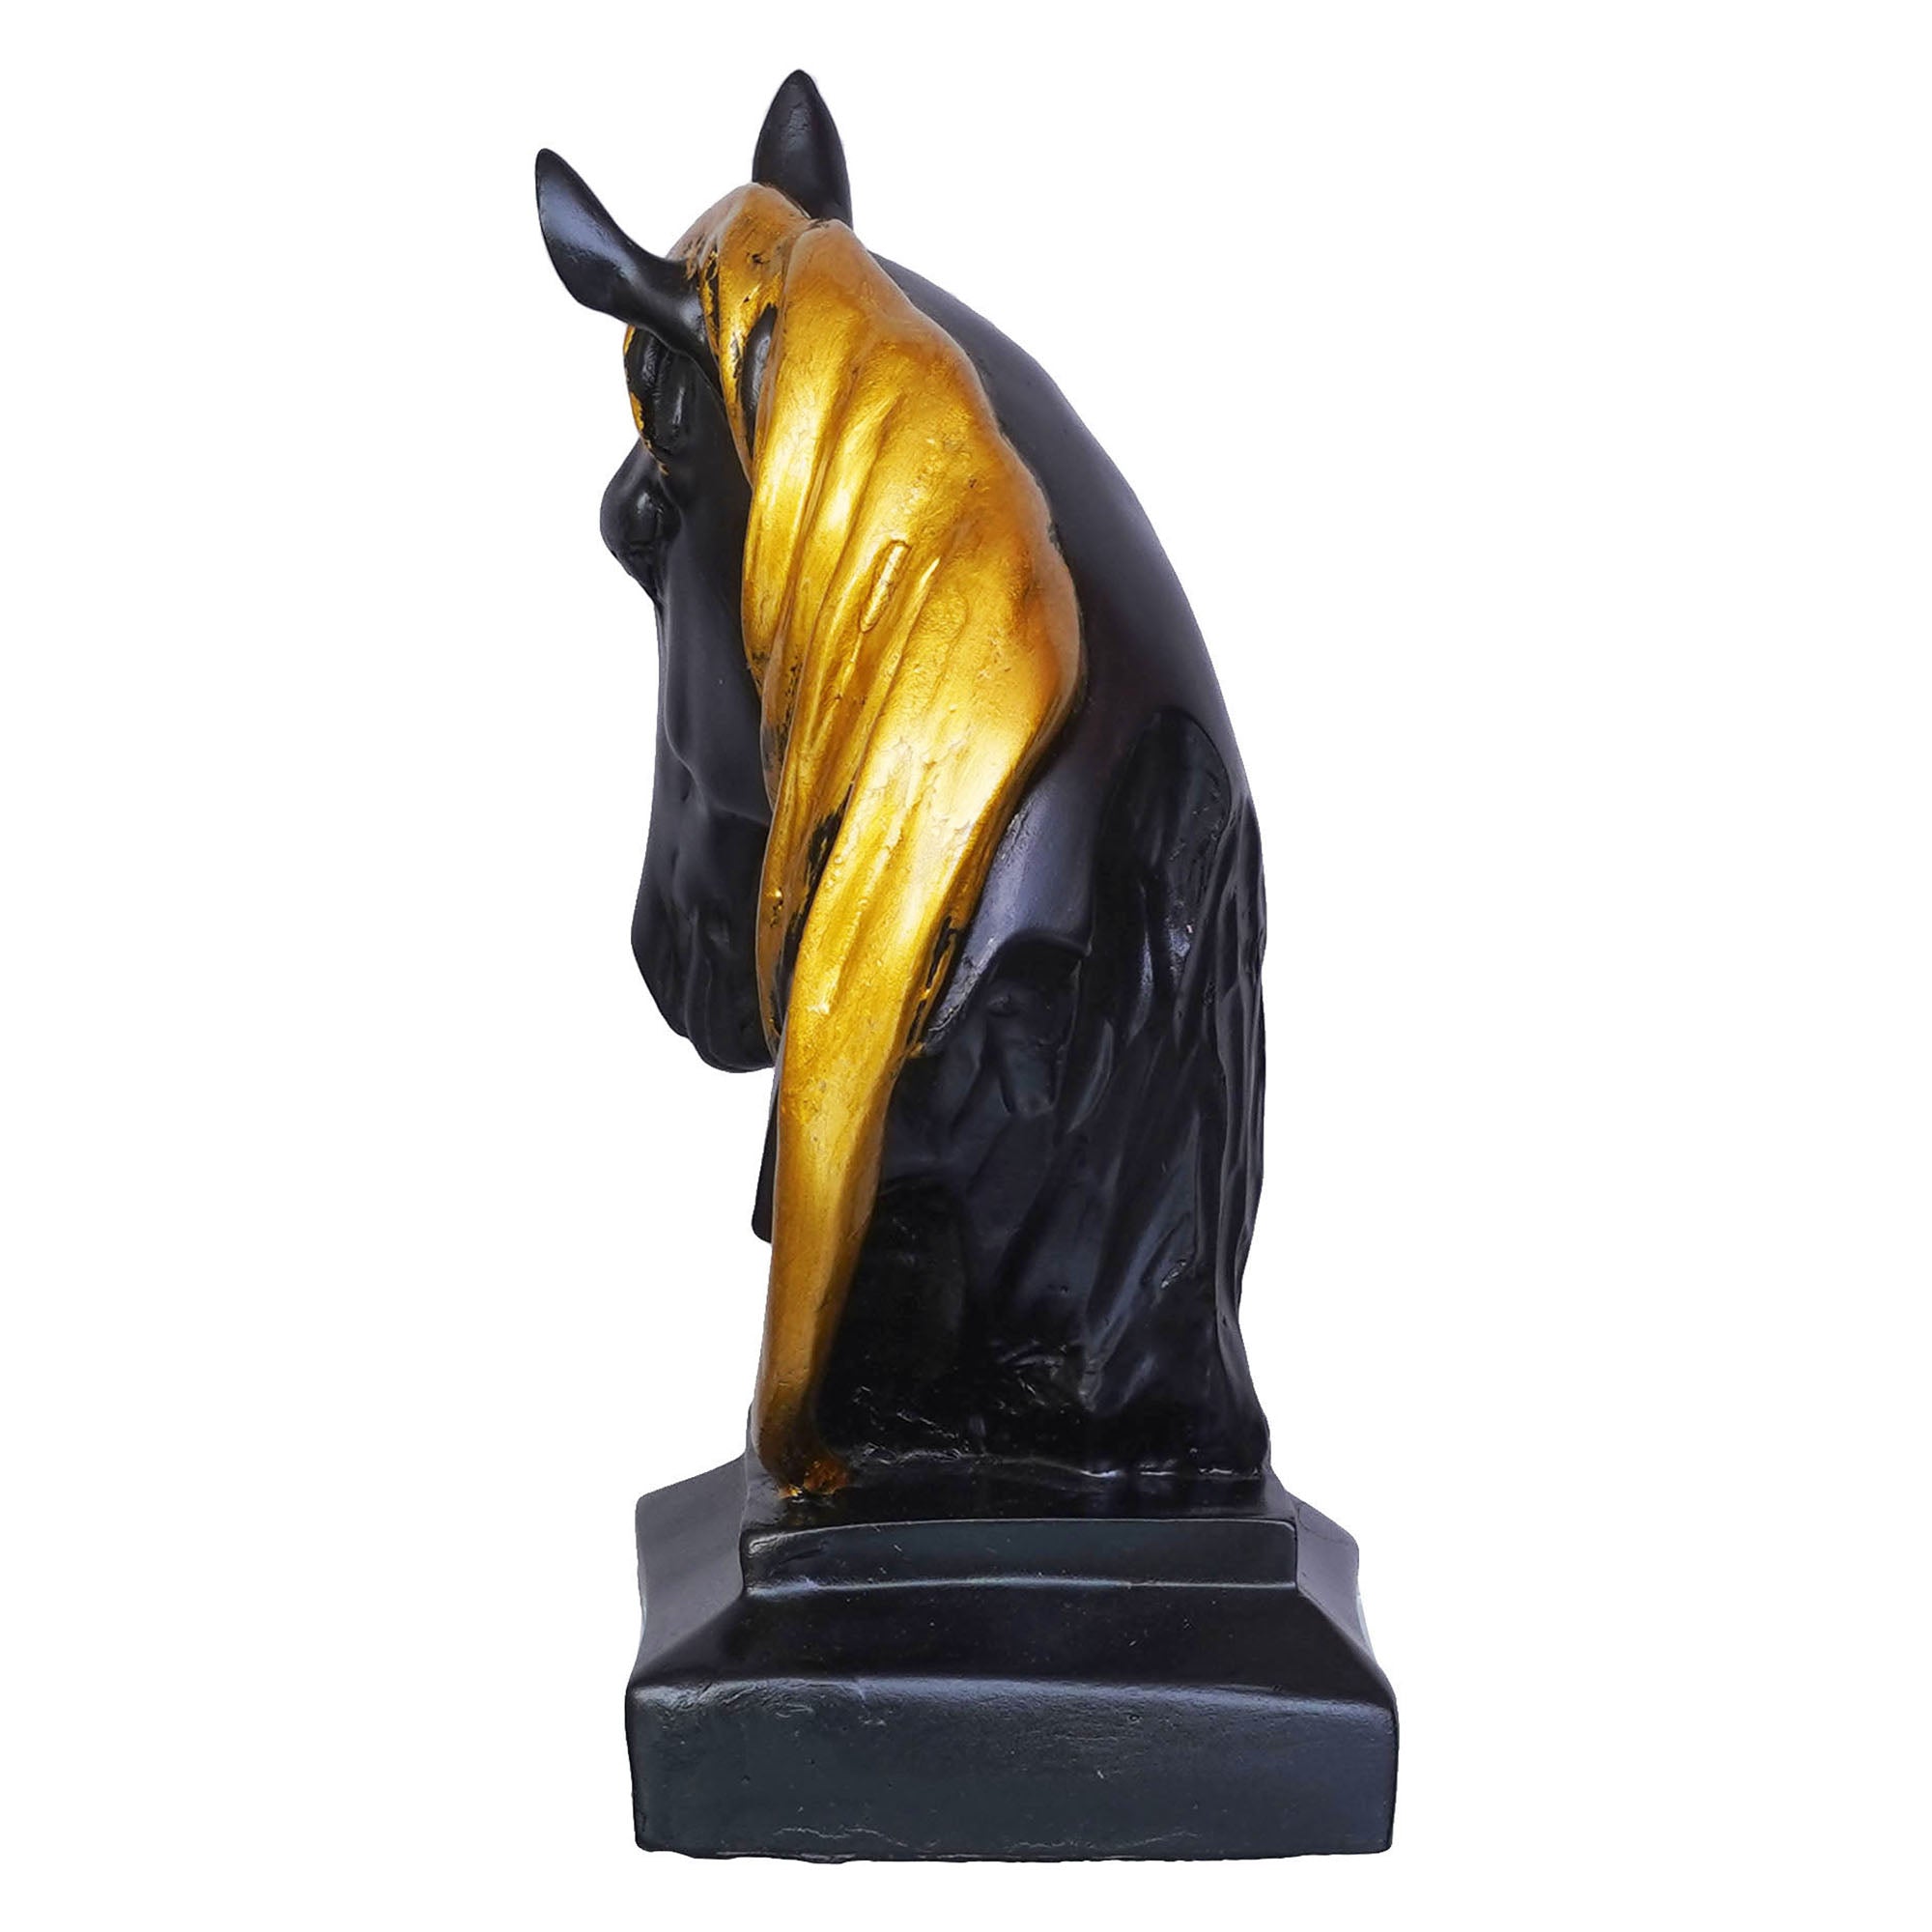 Black Horse Head Statue with Golden Hair Animal Figurine Showpiece 7